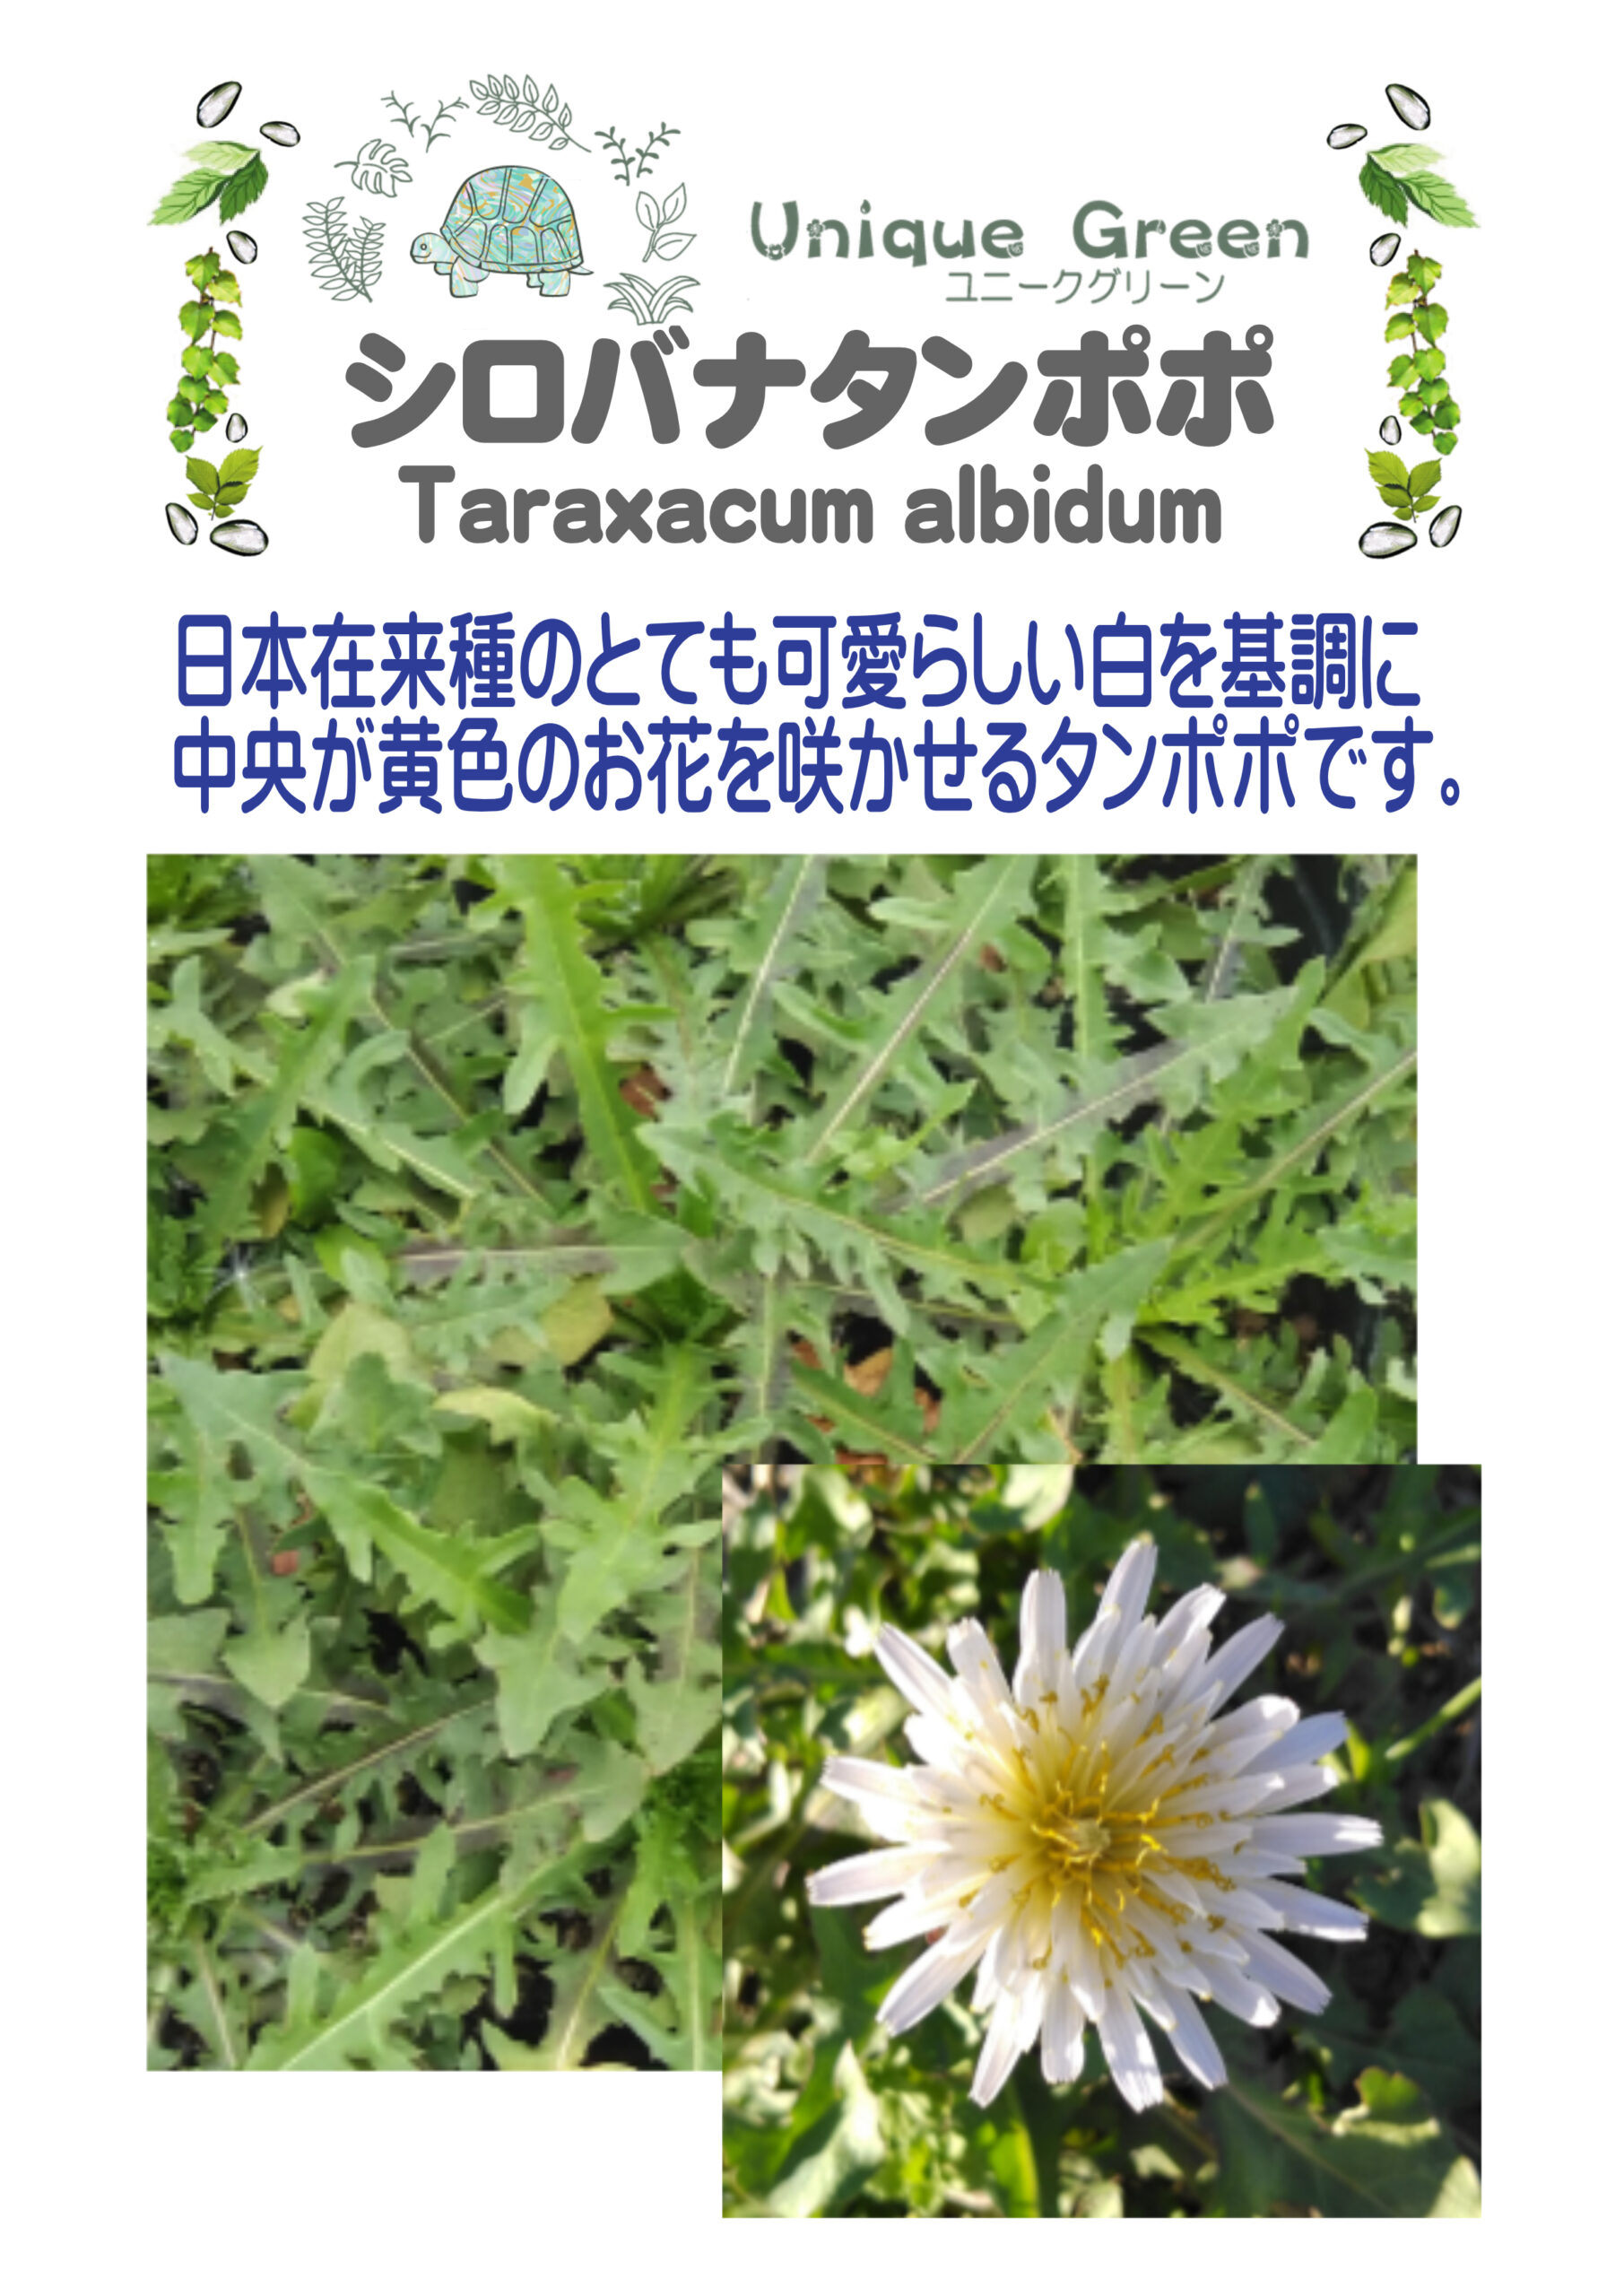 シロバナタンポポ Taraxacum Albidum 日本在来種